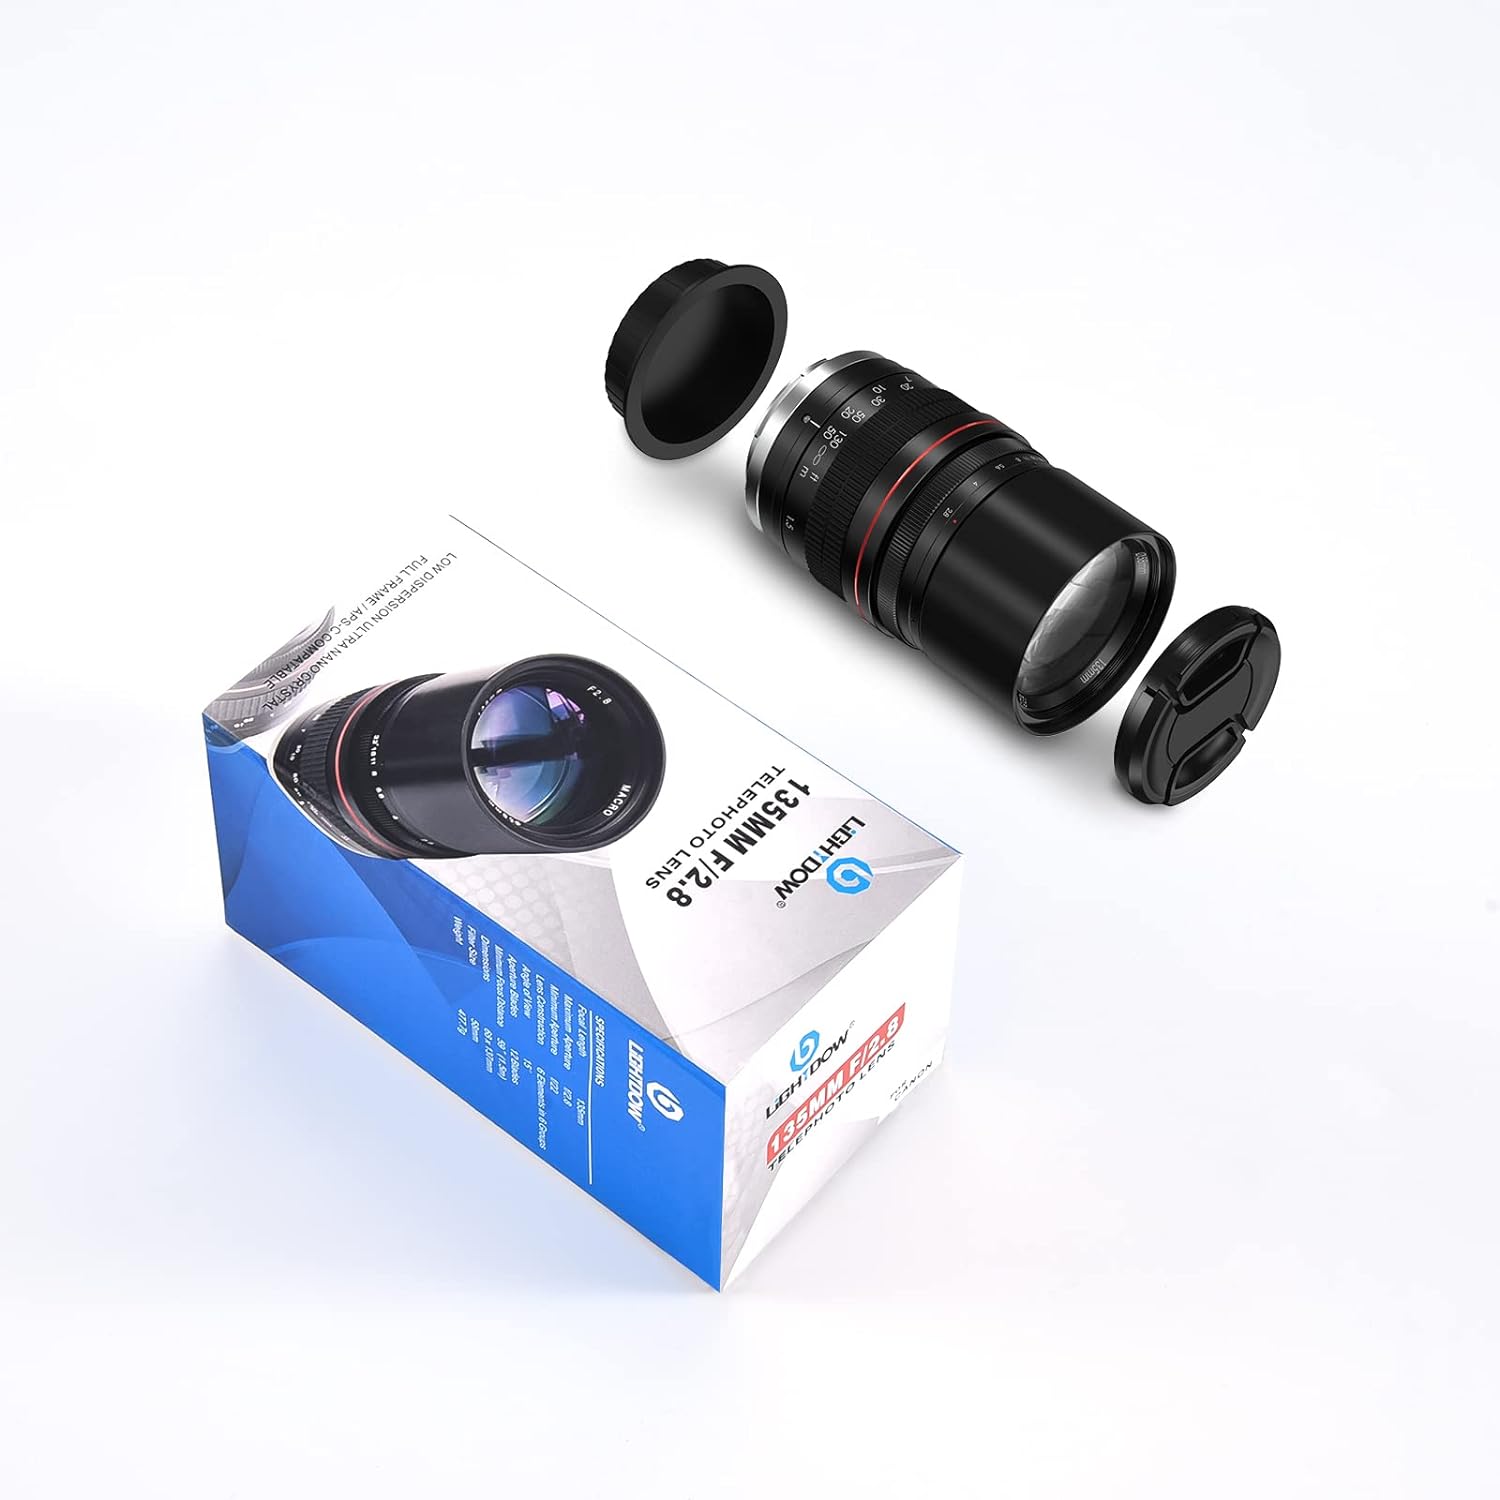 Lightdow 135mm f/2.8 FE UMC Full Frame Telephoto Lens for Nikon D850 D810 D800 D750 D700 D610 D300 D3100 D3200 D3300 D3400 D5100 D5200 D5300 D5500 D5600 etc